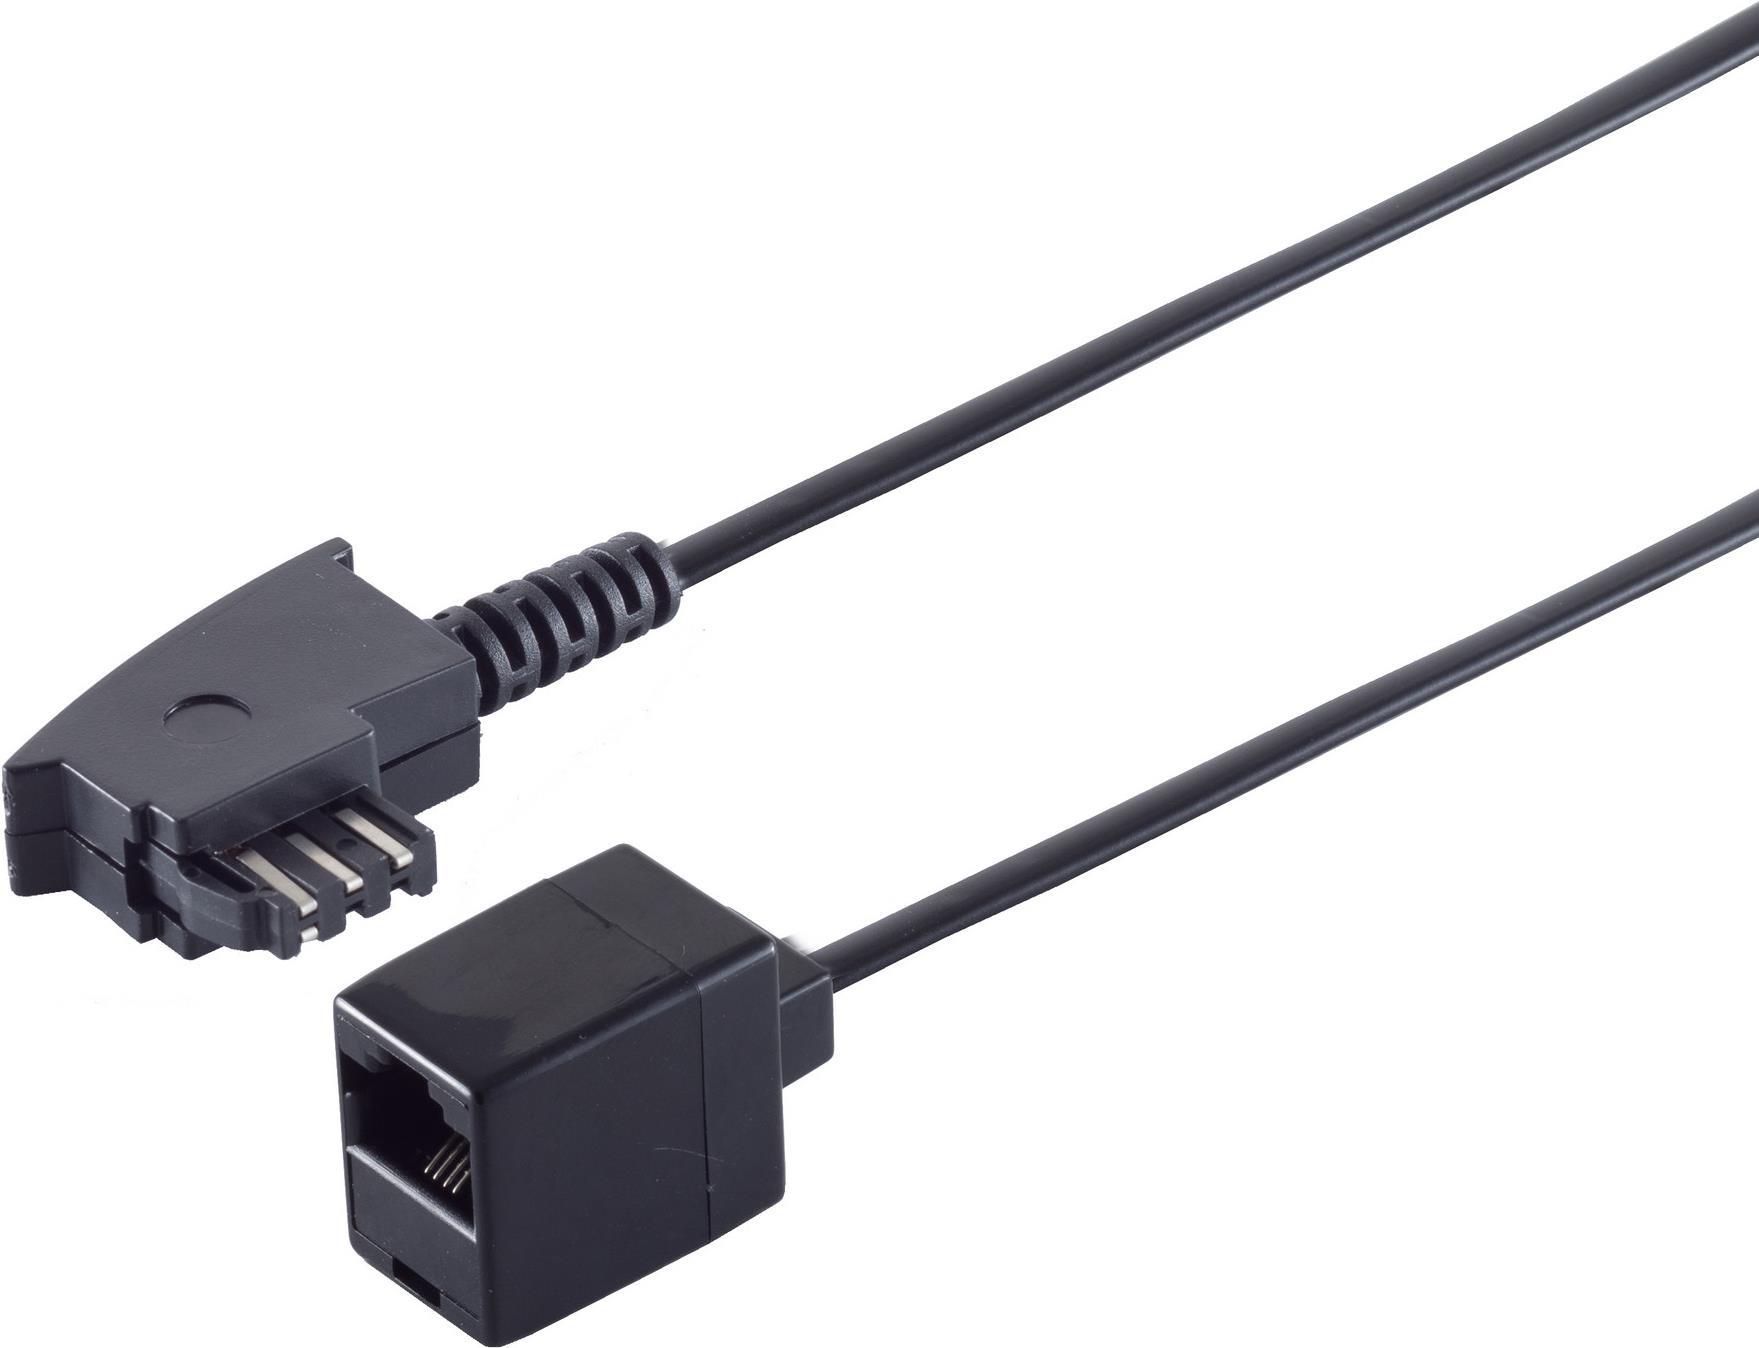 Adapter TAE-F Stecker auf RJ45 Kupplung, mit 0,2 m Kabel 4-adrig belegt, Farbe: schwarz (11010475)